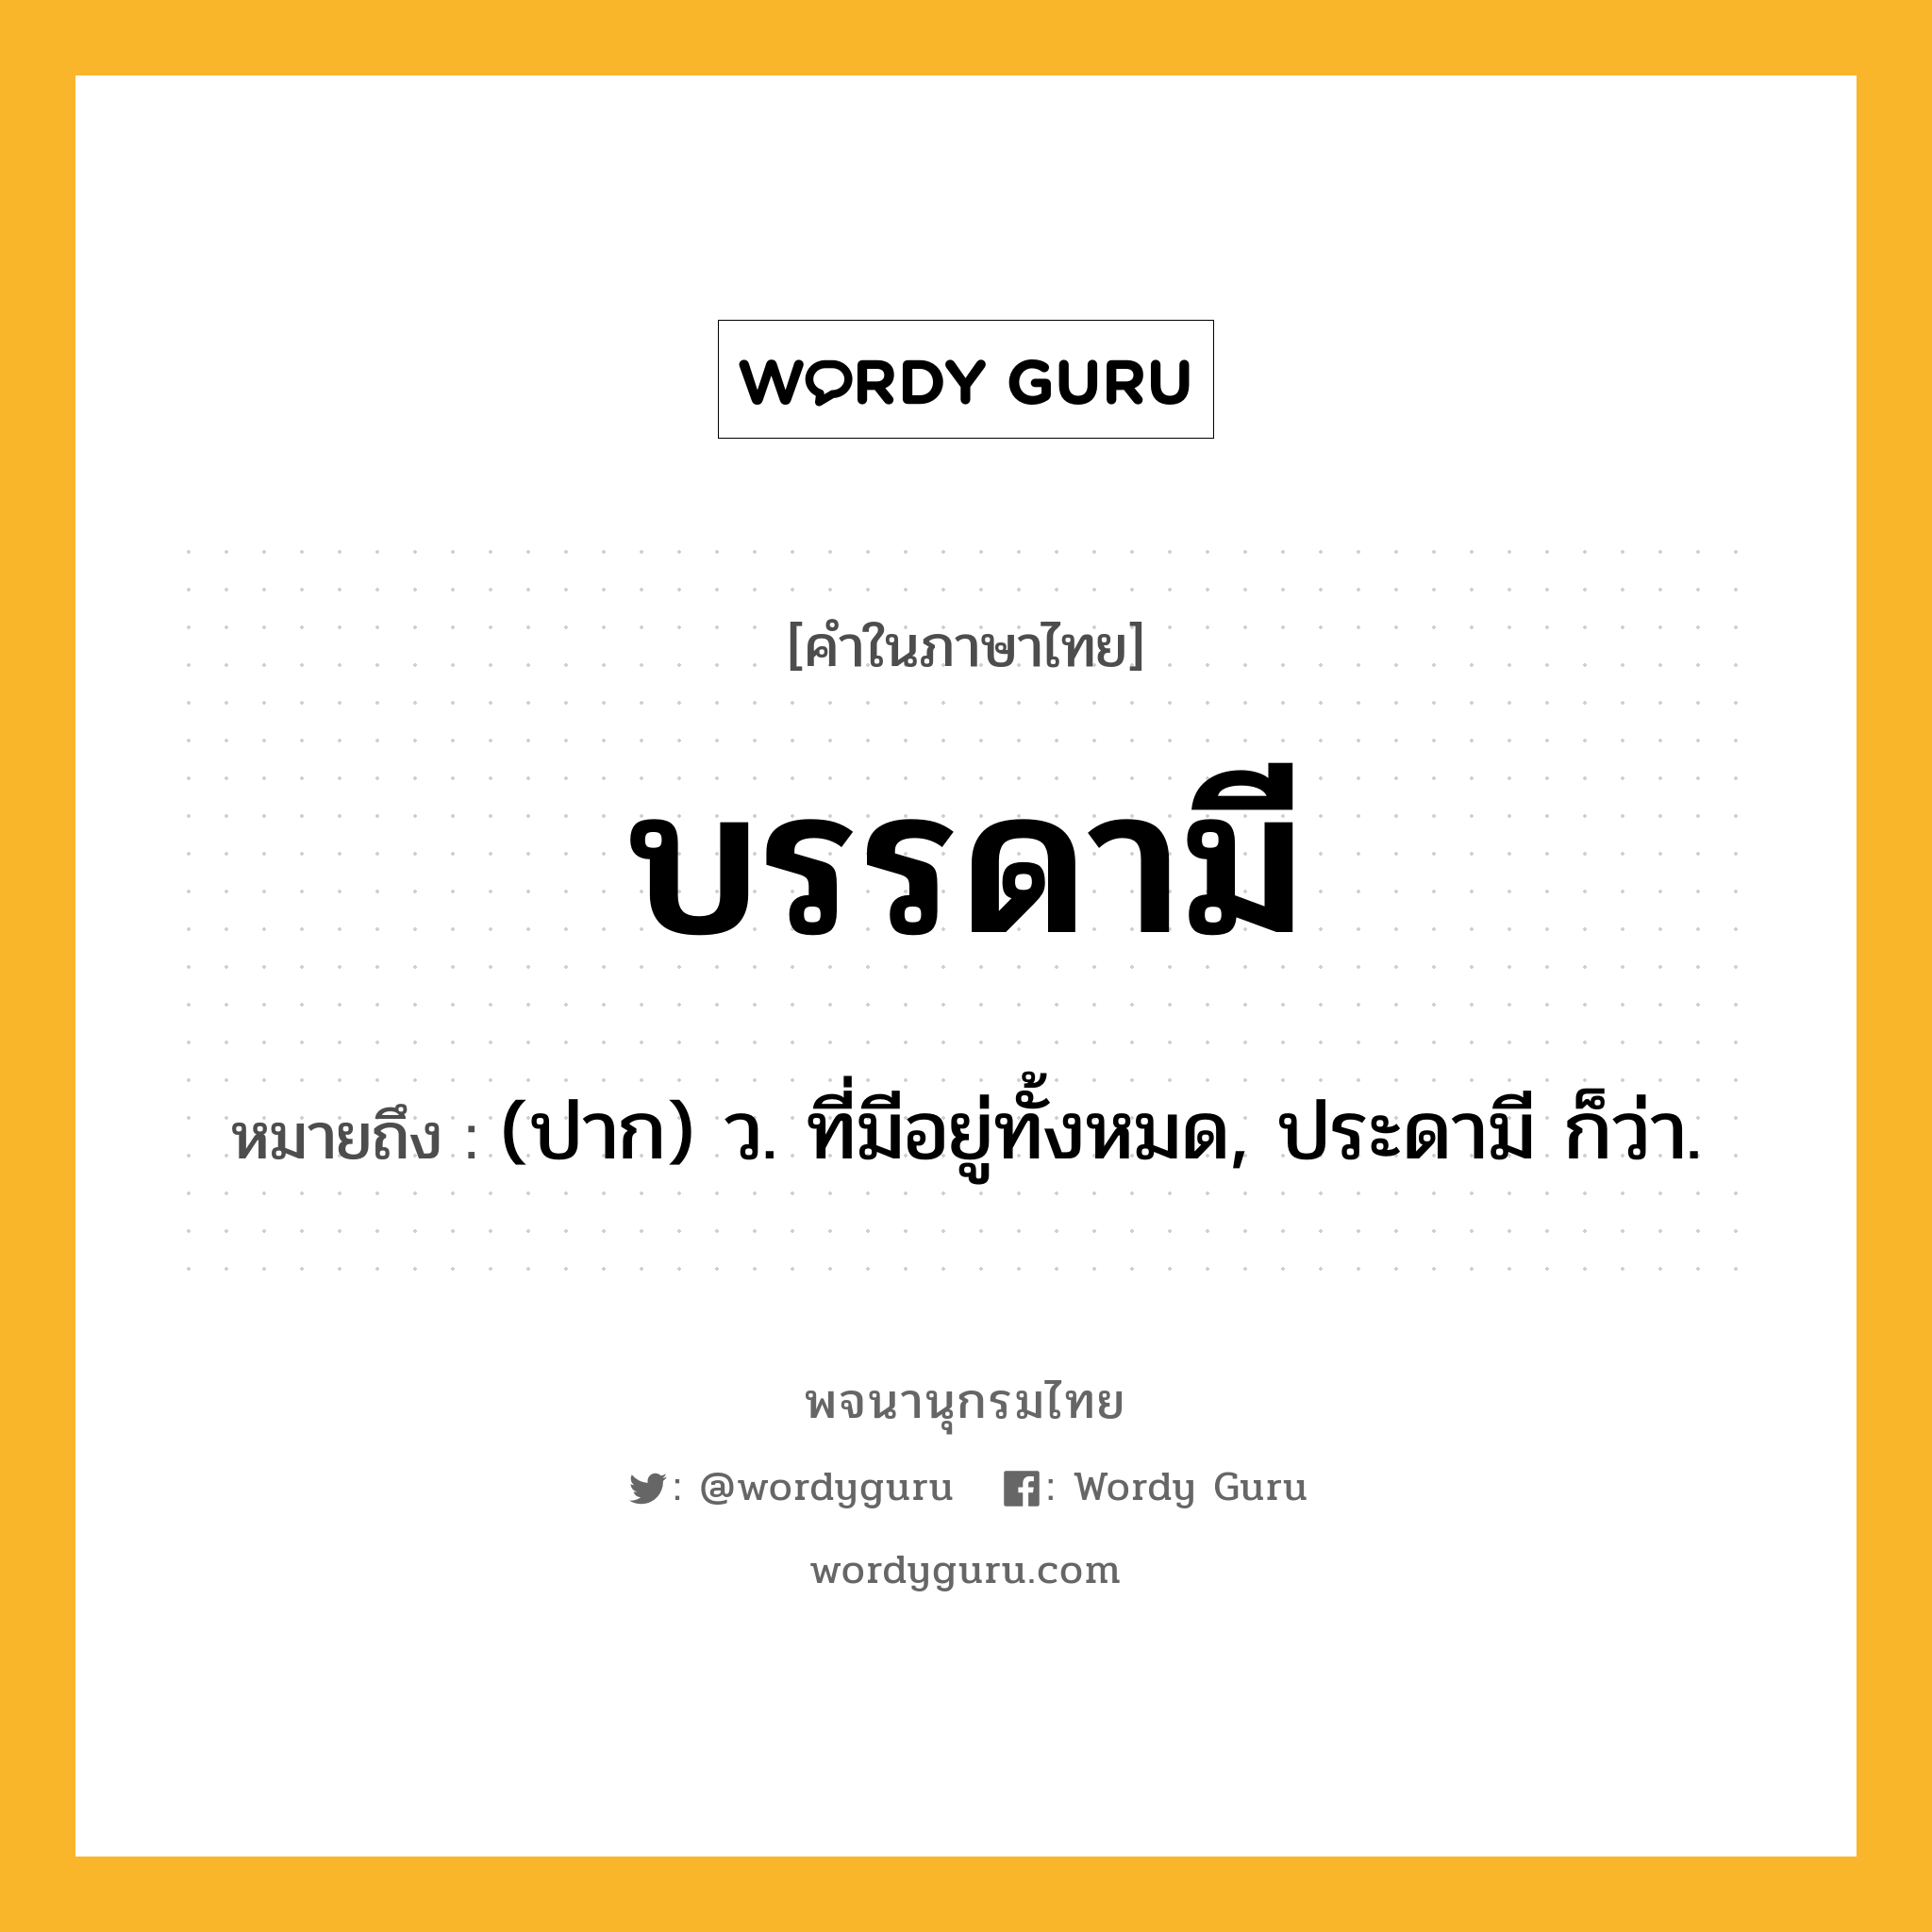 บรรดามี ความหมาย หมายถึงอะไร?, คำในภาษาไทย บรรดามี หมายถึง (ปาก) ว. ที่มีอยู่ทั้งหมด, ประดามี ก็ว่า.